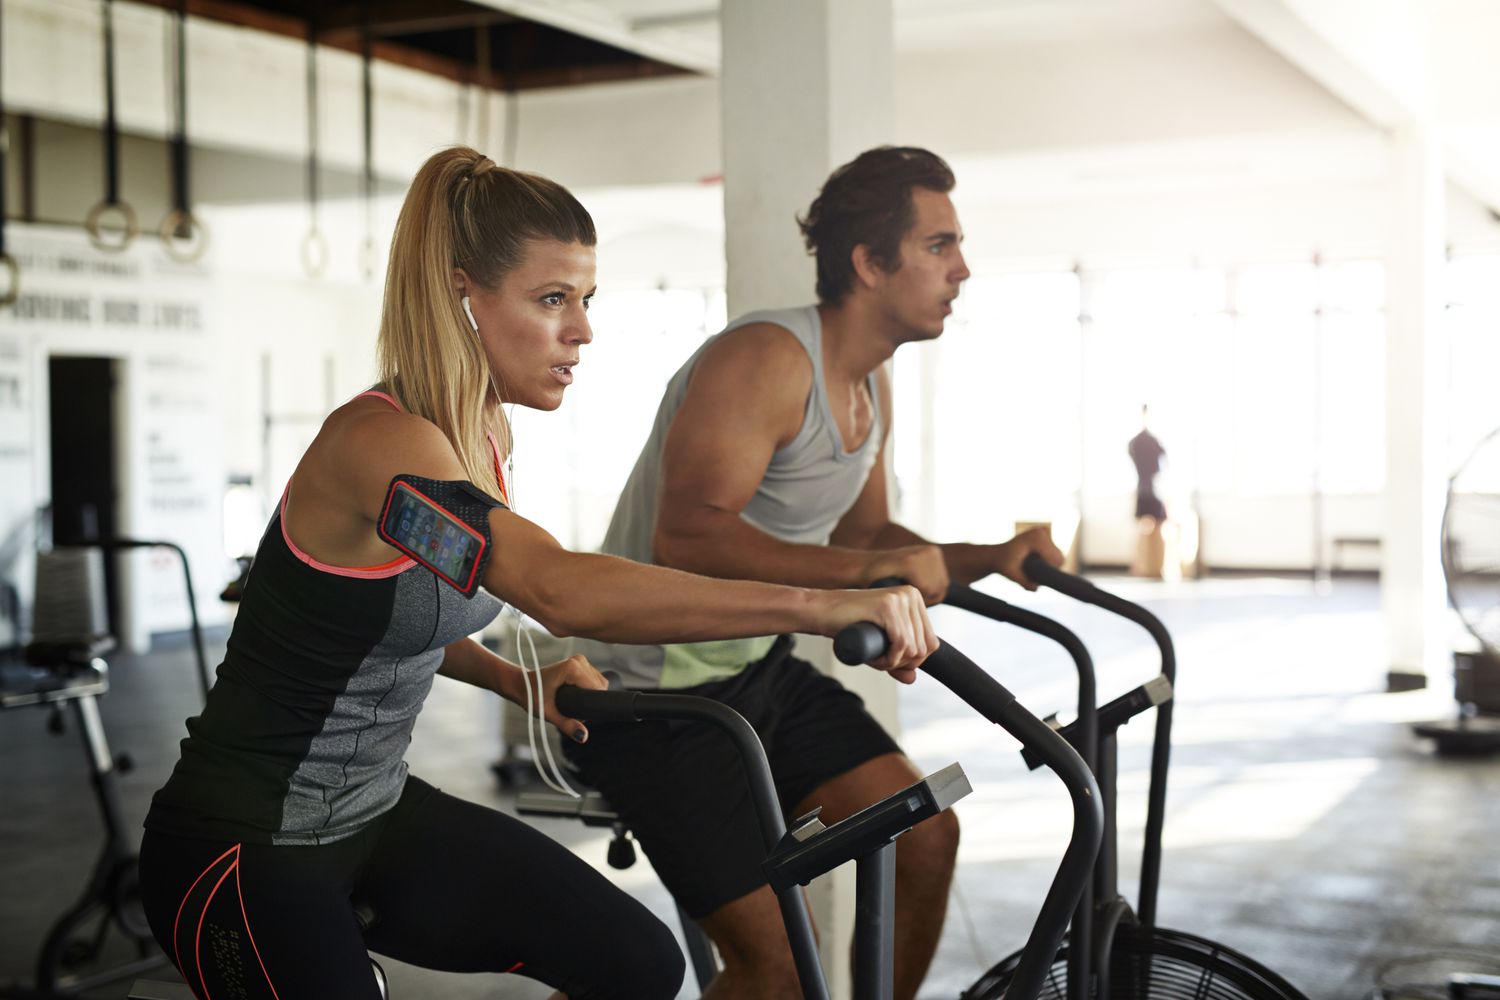 Vrouw &man trainen op crosscycle in de sportschool